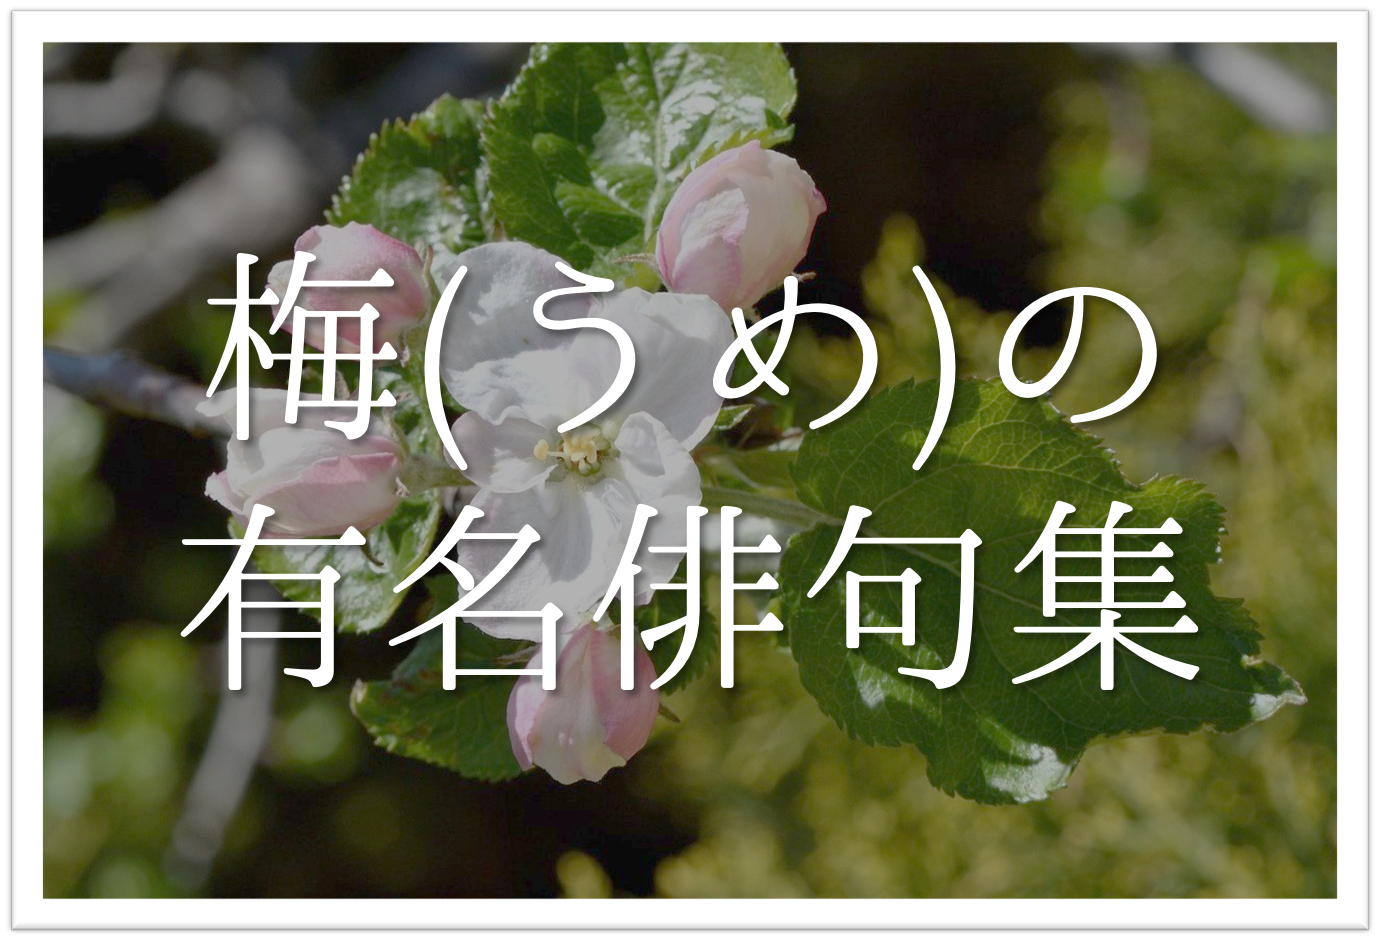 梅に関する有名俳句 選 日本の春の風物詩 季語を含んだ俳人名句を紹介 俳句の教科書 俳句の作り方 有名俳句の解説サイト